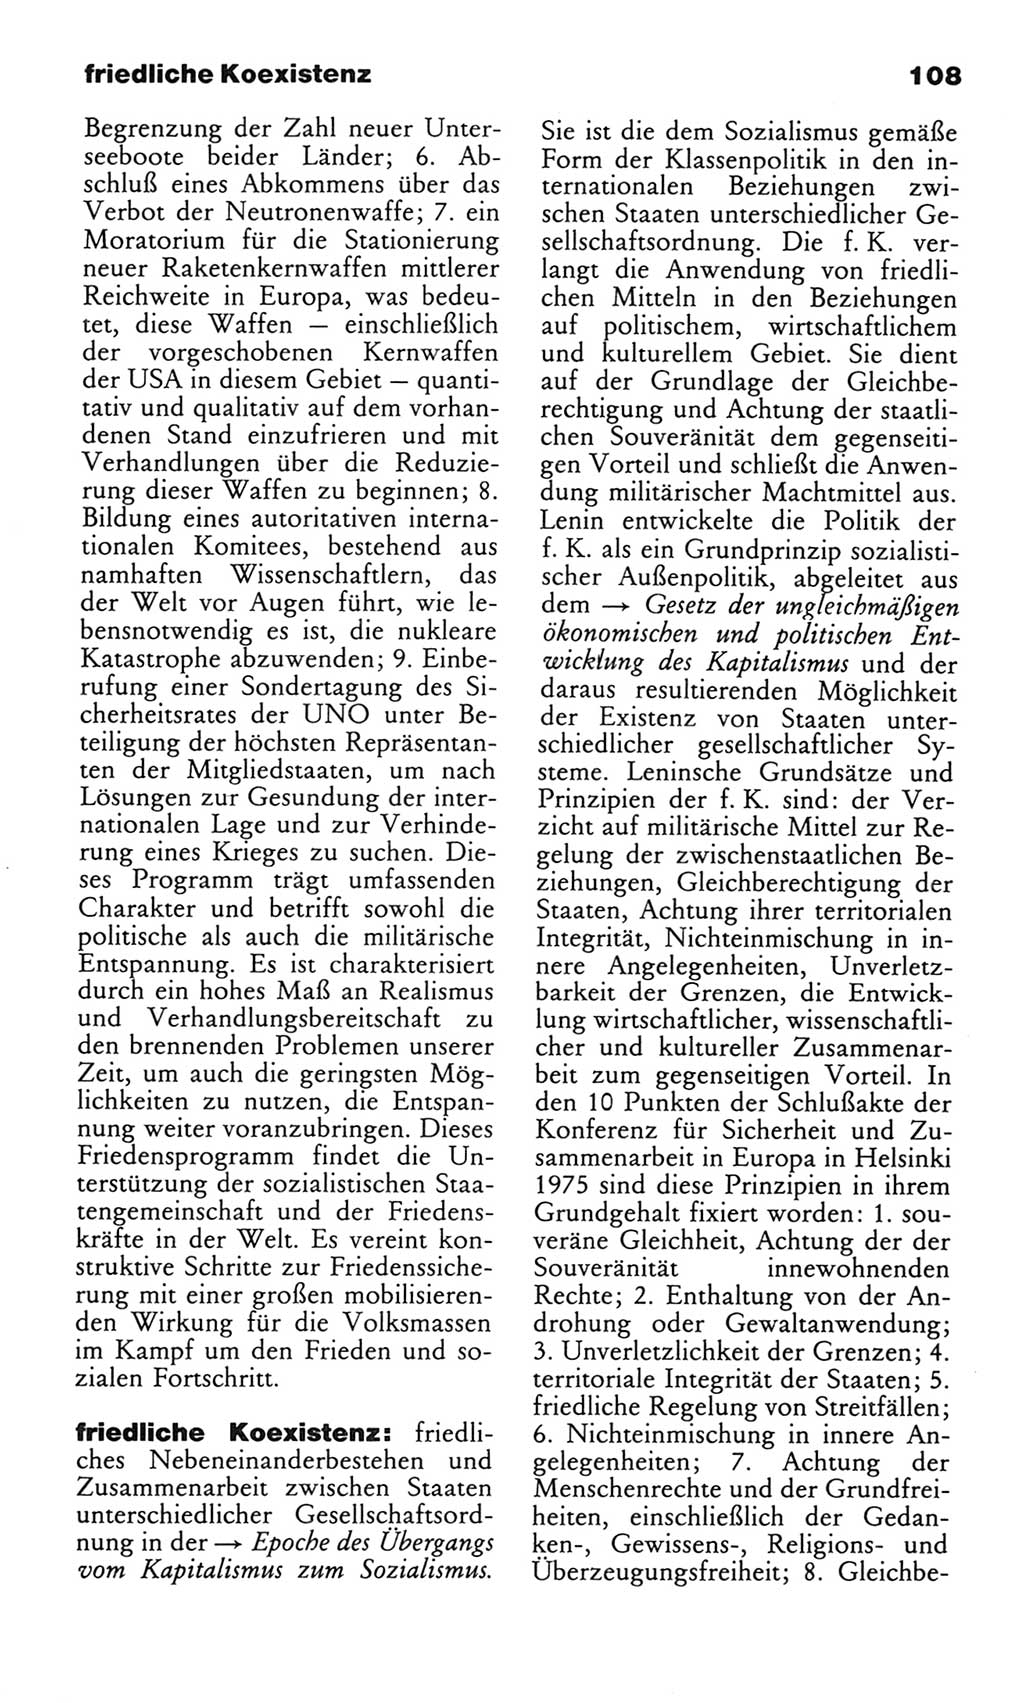 Wörterbuch des wissenschaftlichen Kommunismus [Deutsche Demokratische Republik (DDR)] 1982, Seite 108 (Wb. wiss. Komm. DDR 1982, S. 108)